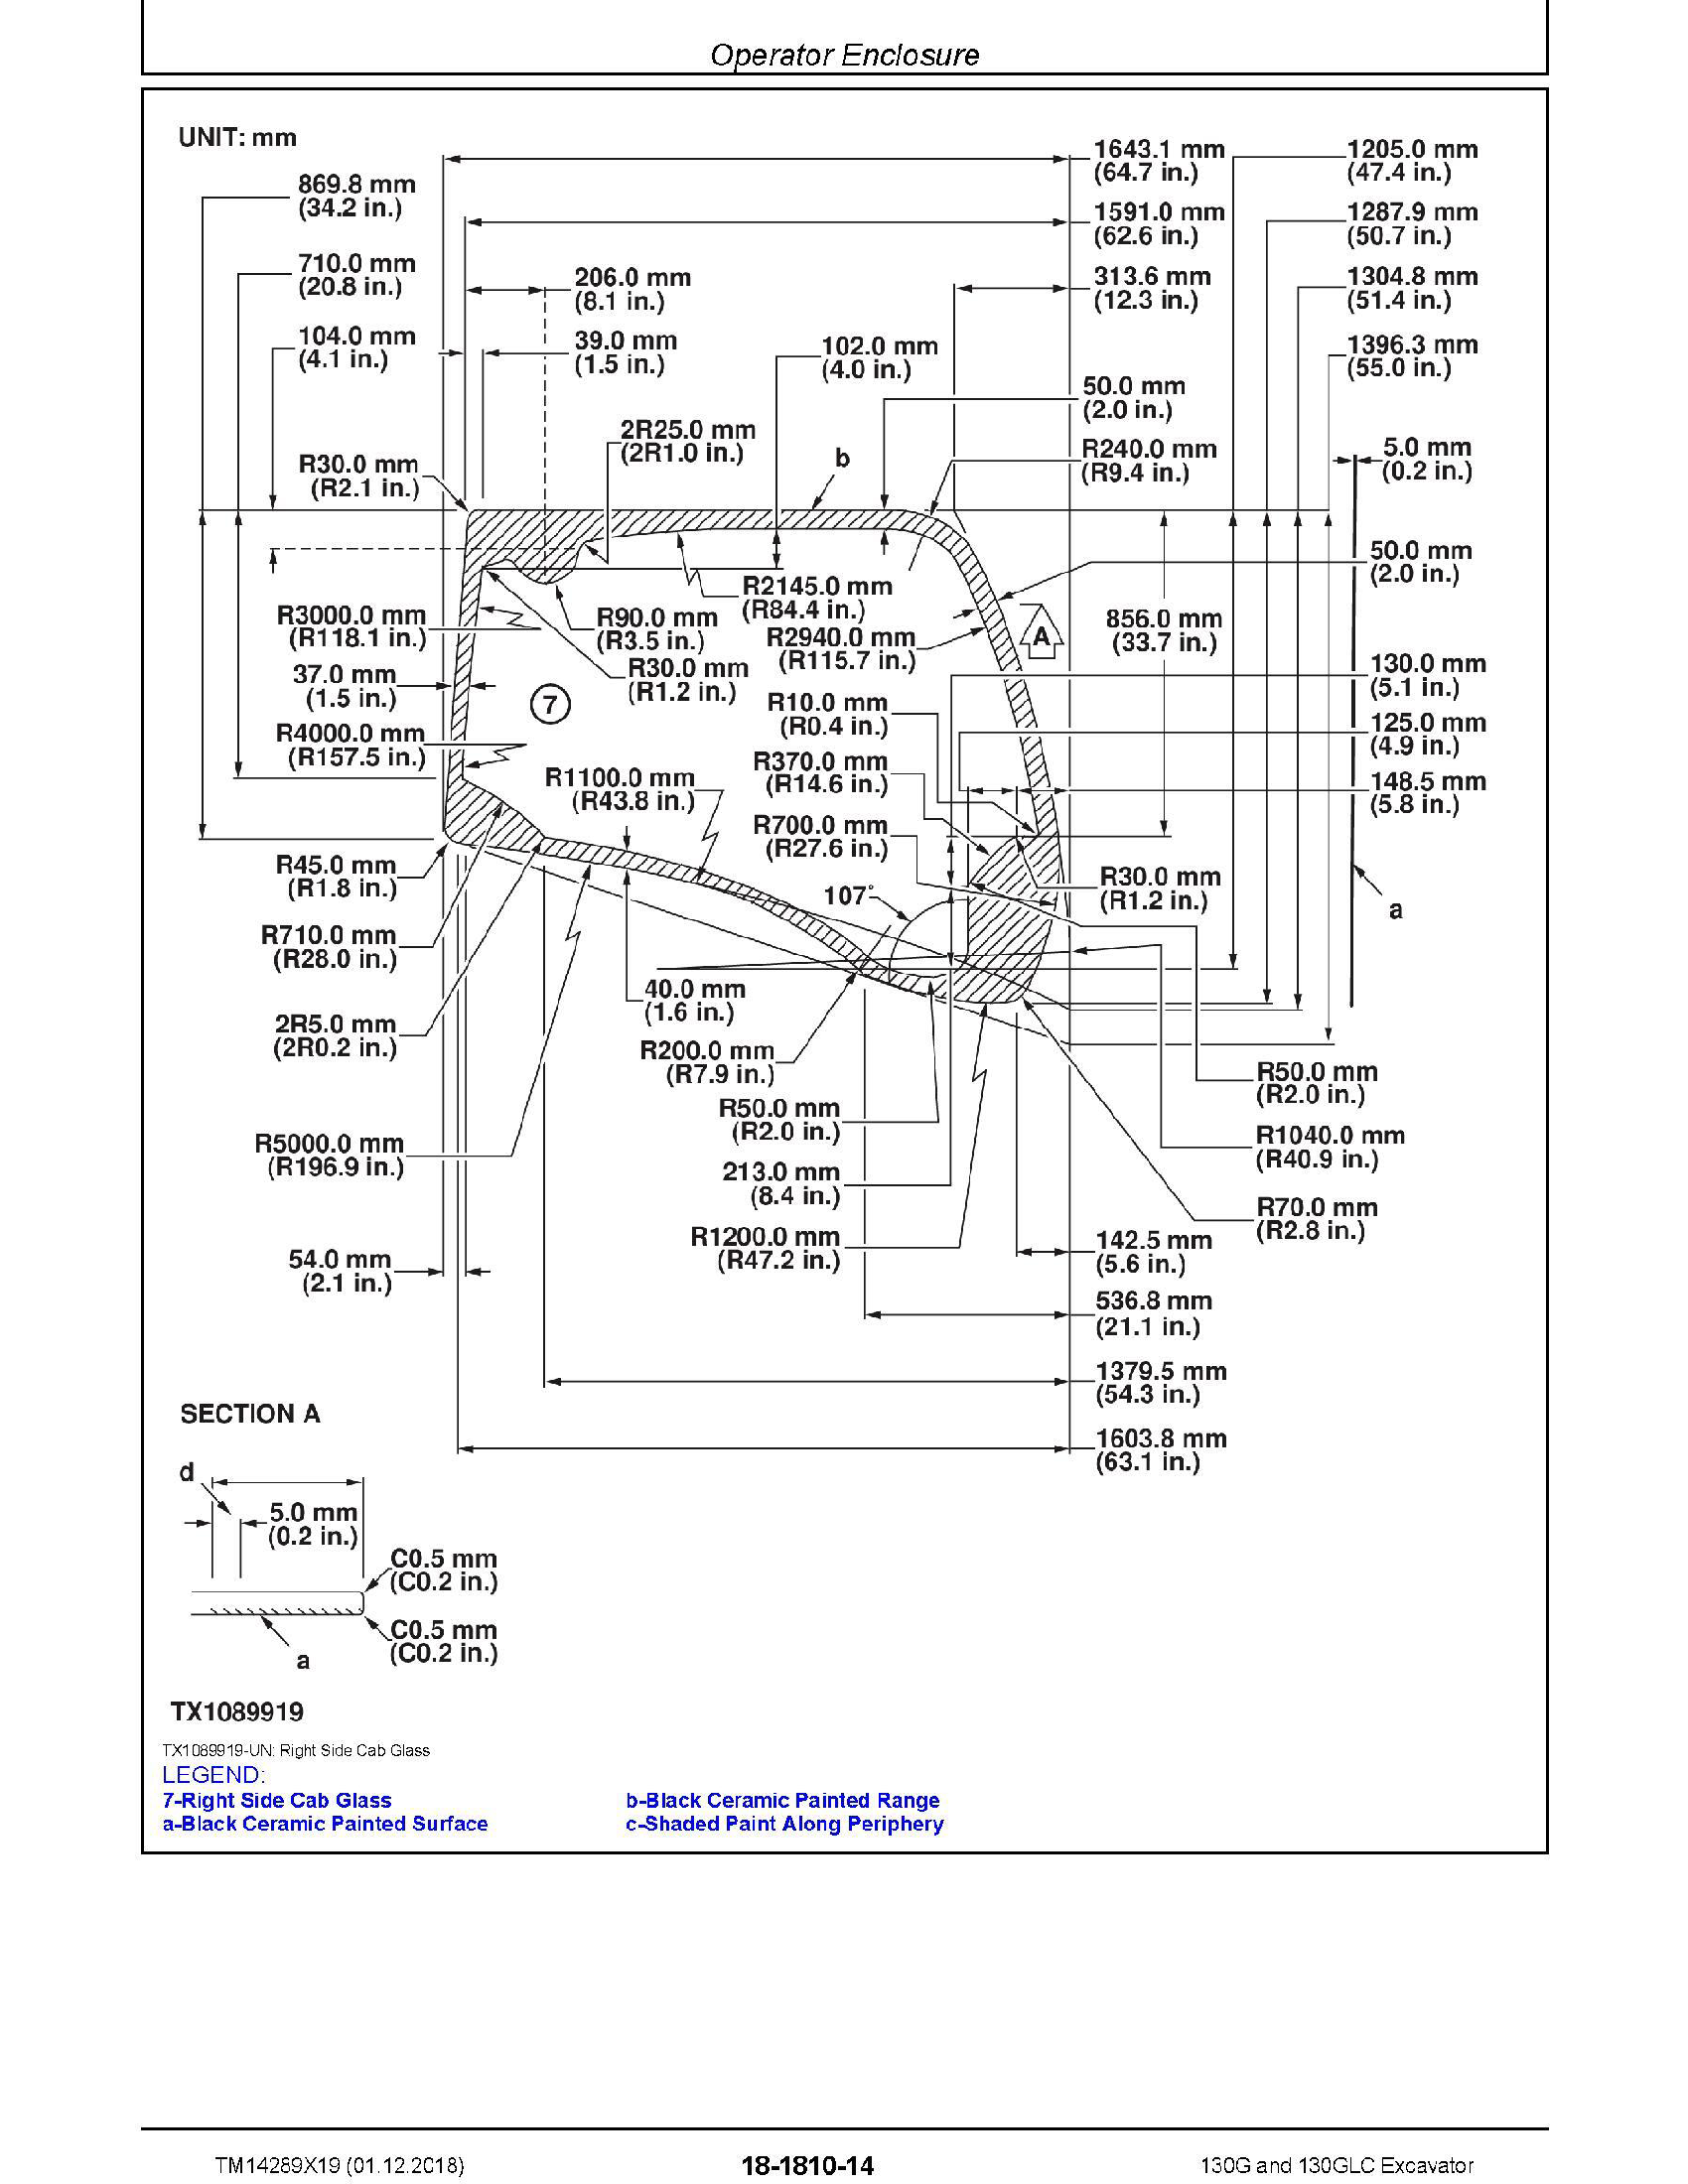 John Deere 9550 manual pdf